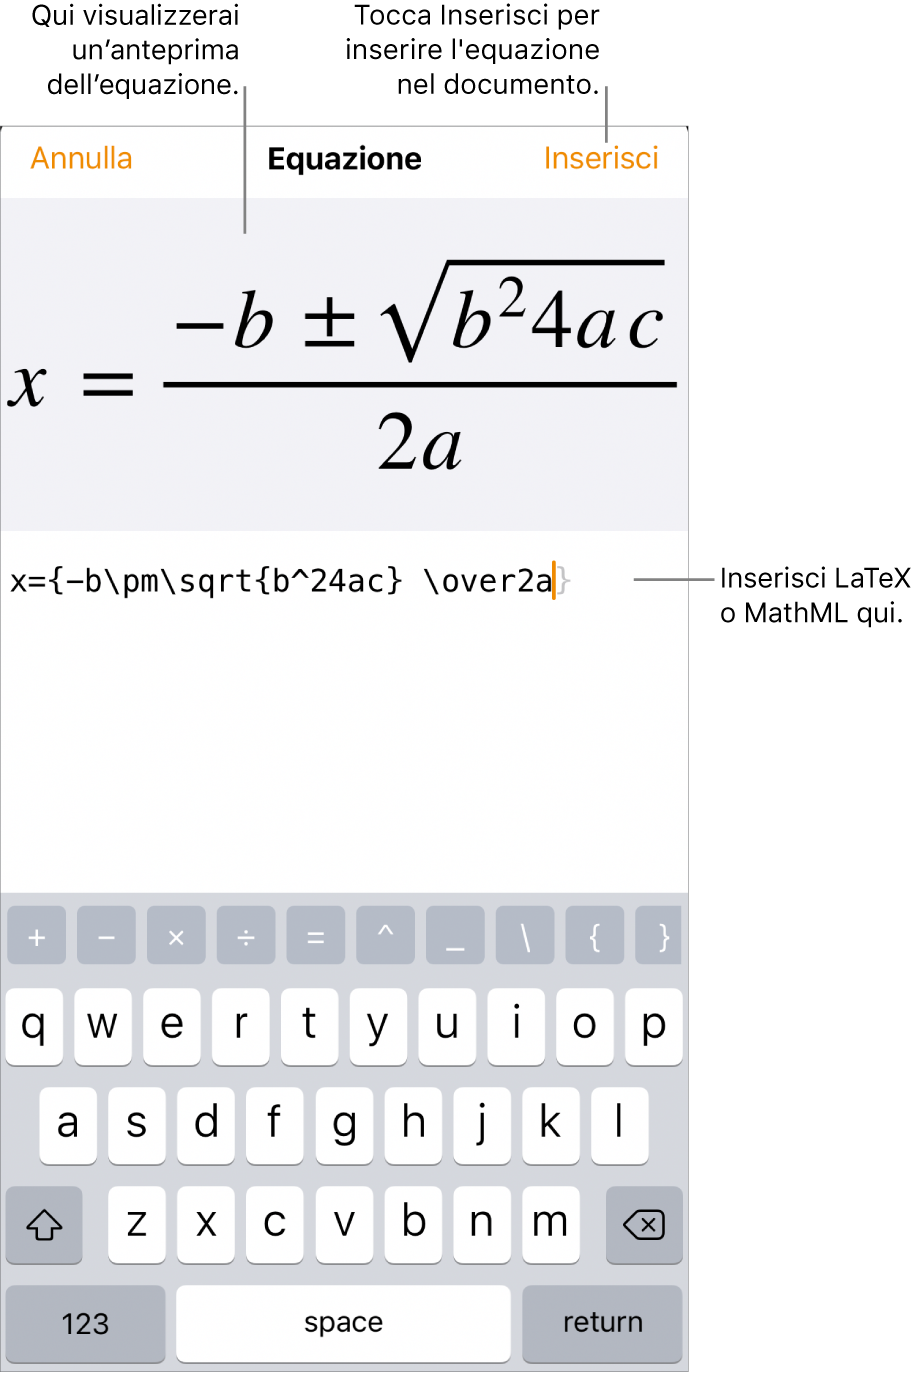 La finestra di dialogo Equazione che mostra la formula quadratica scritta tramite comandi LaTeX e un'anteprima della formula sopra.